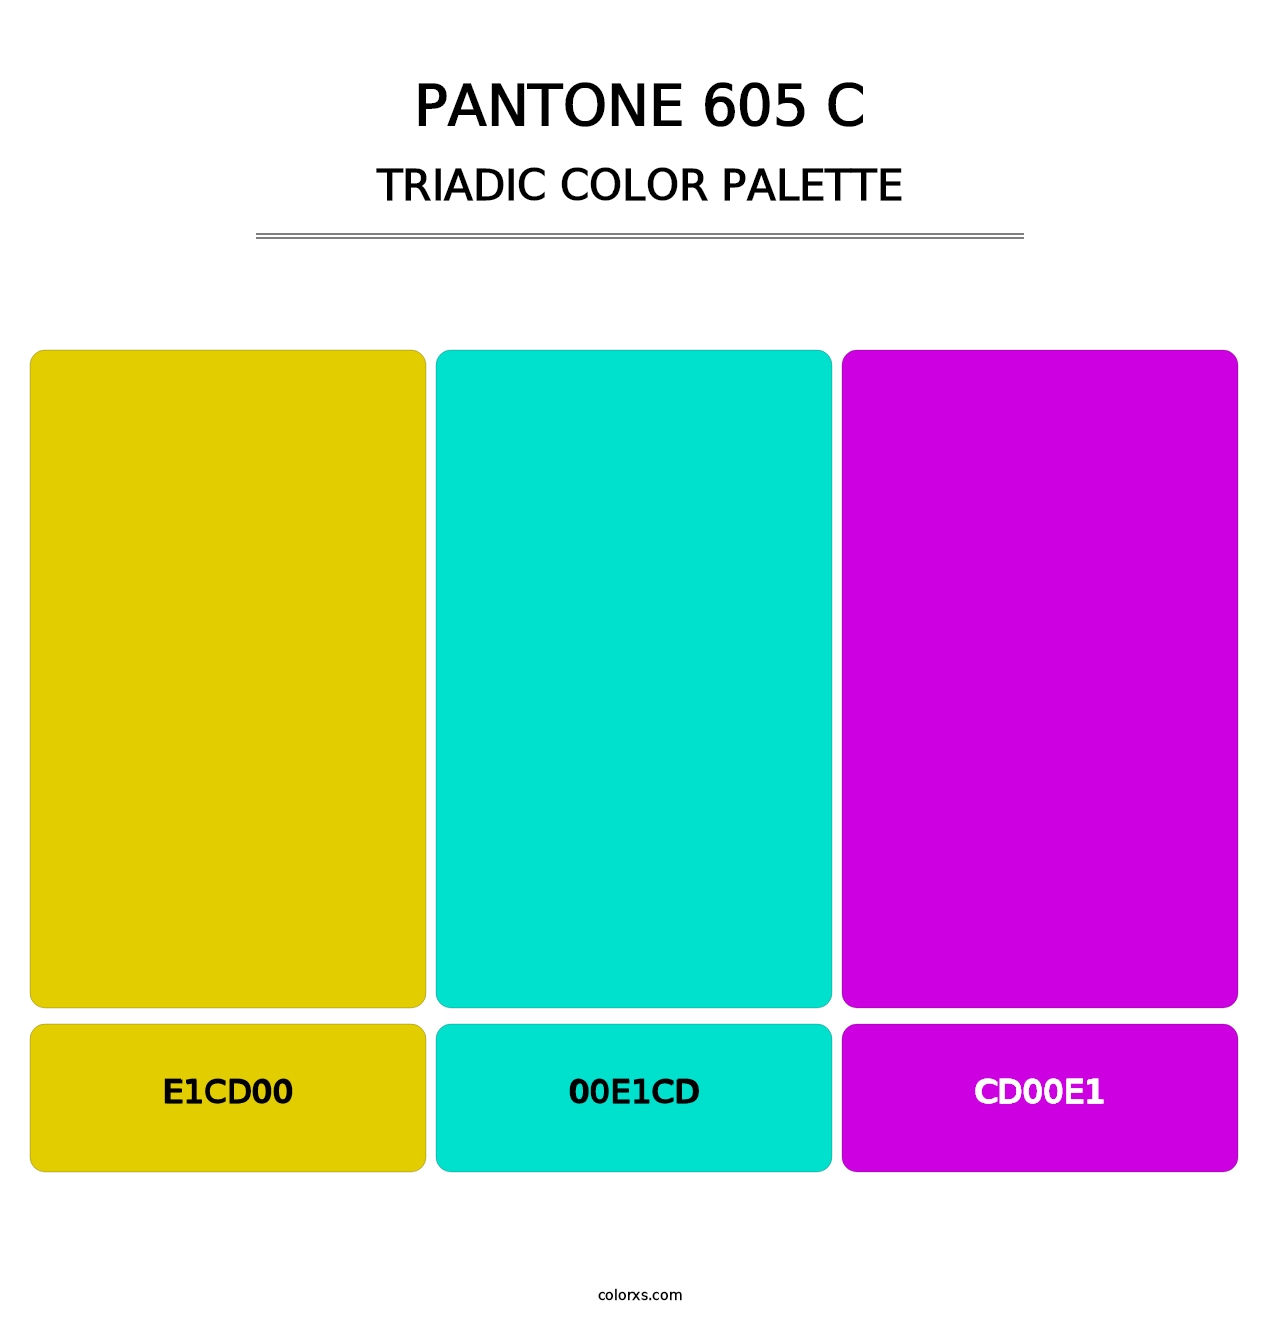 PANTONE 605 C - Triadic Color Palette